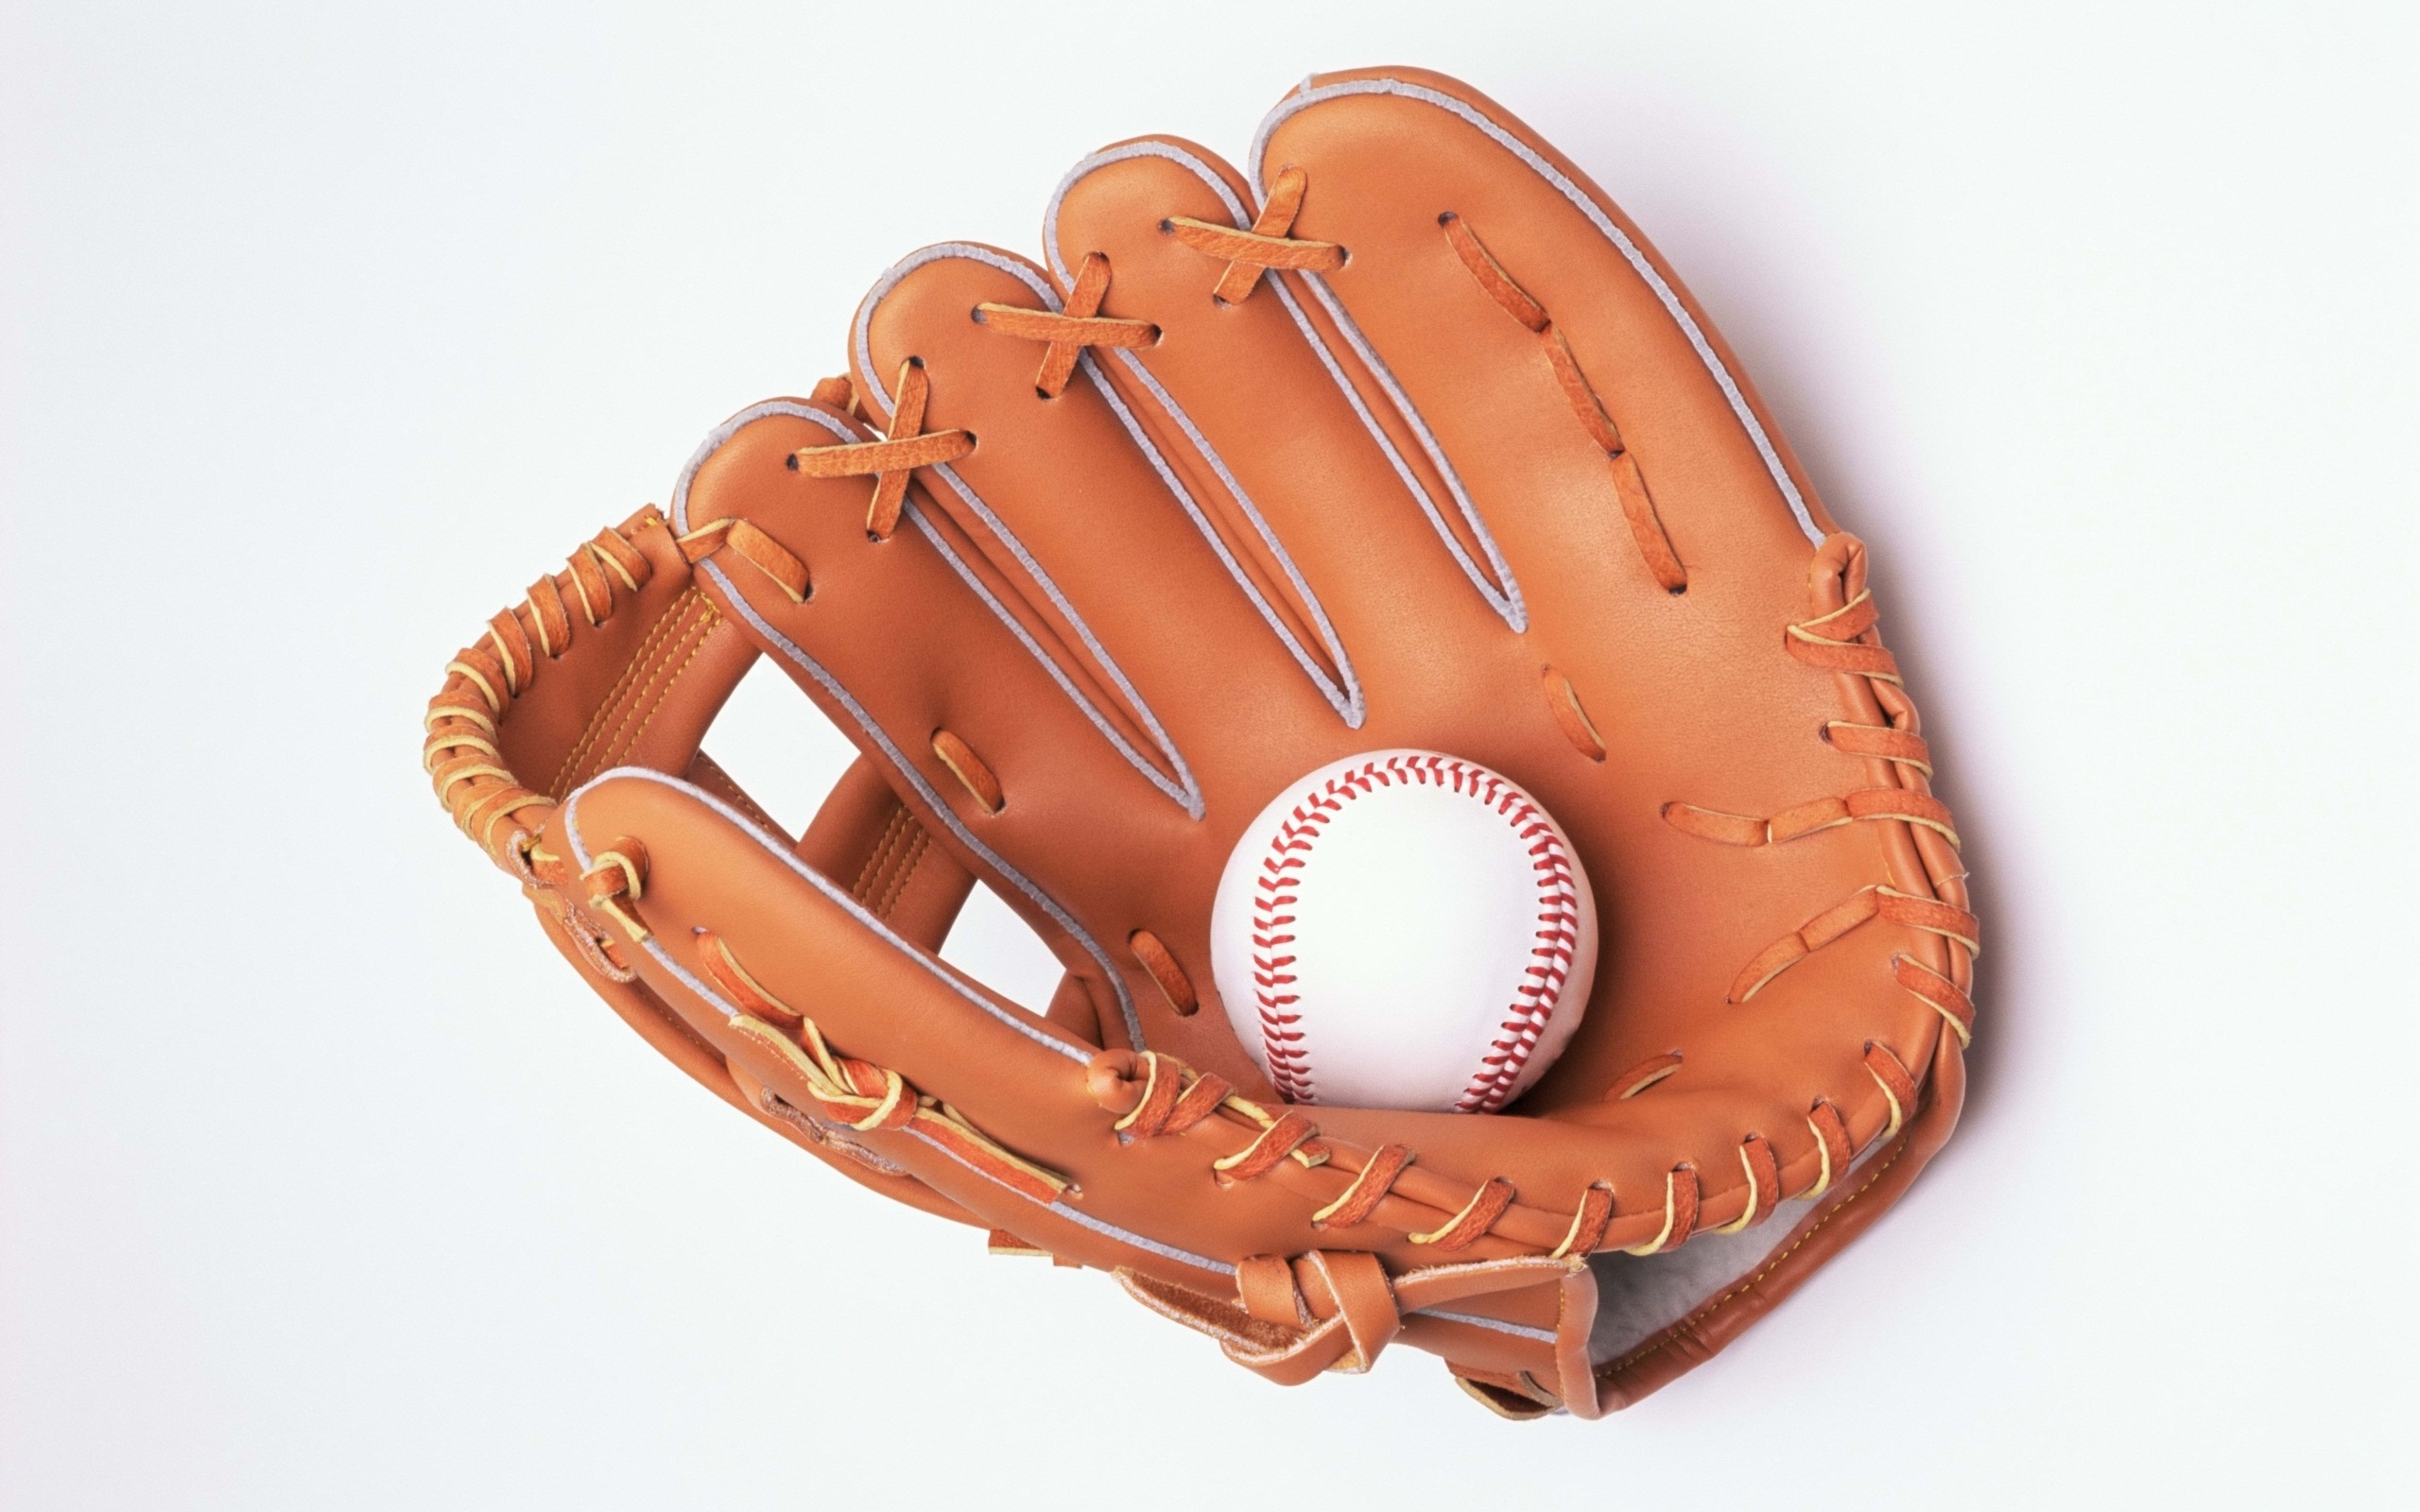 Free download wallpaper Sports, Ball, Glove, Baseball, Catchers Mitt on your PC desktop